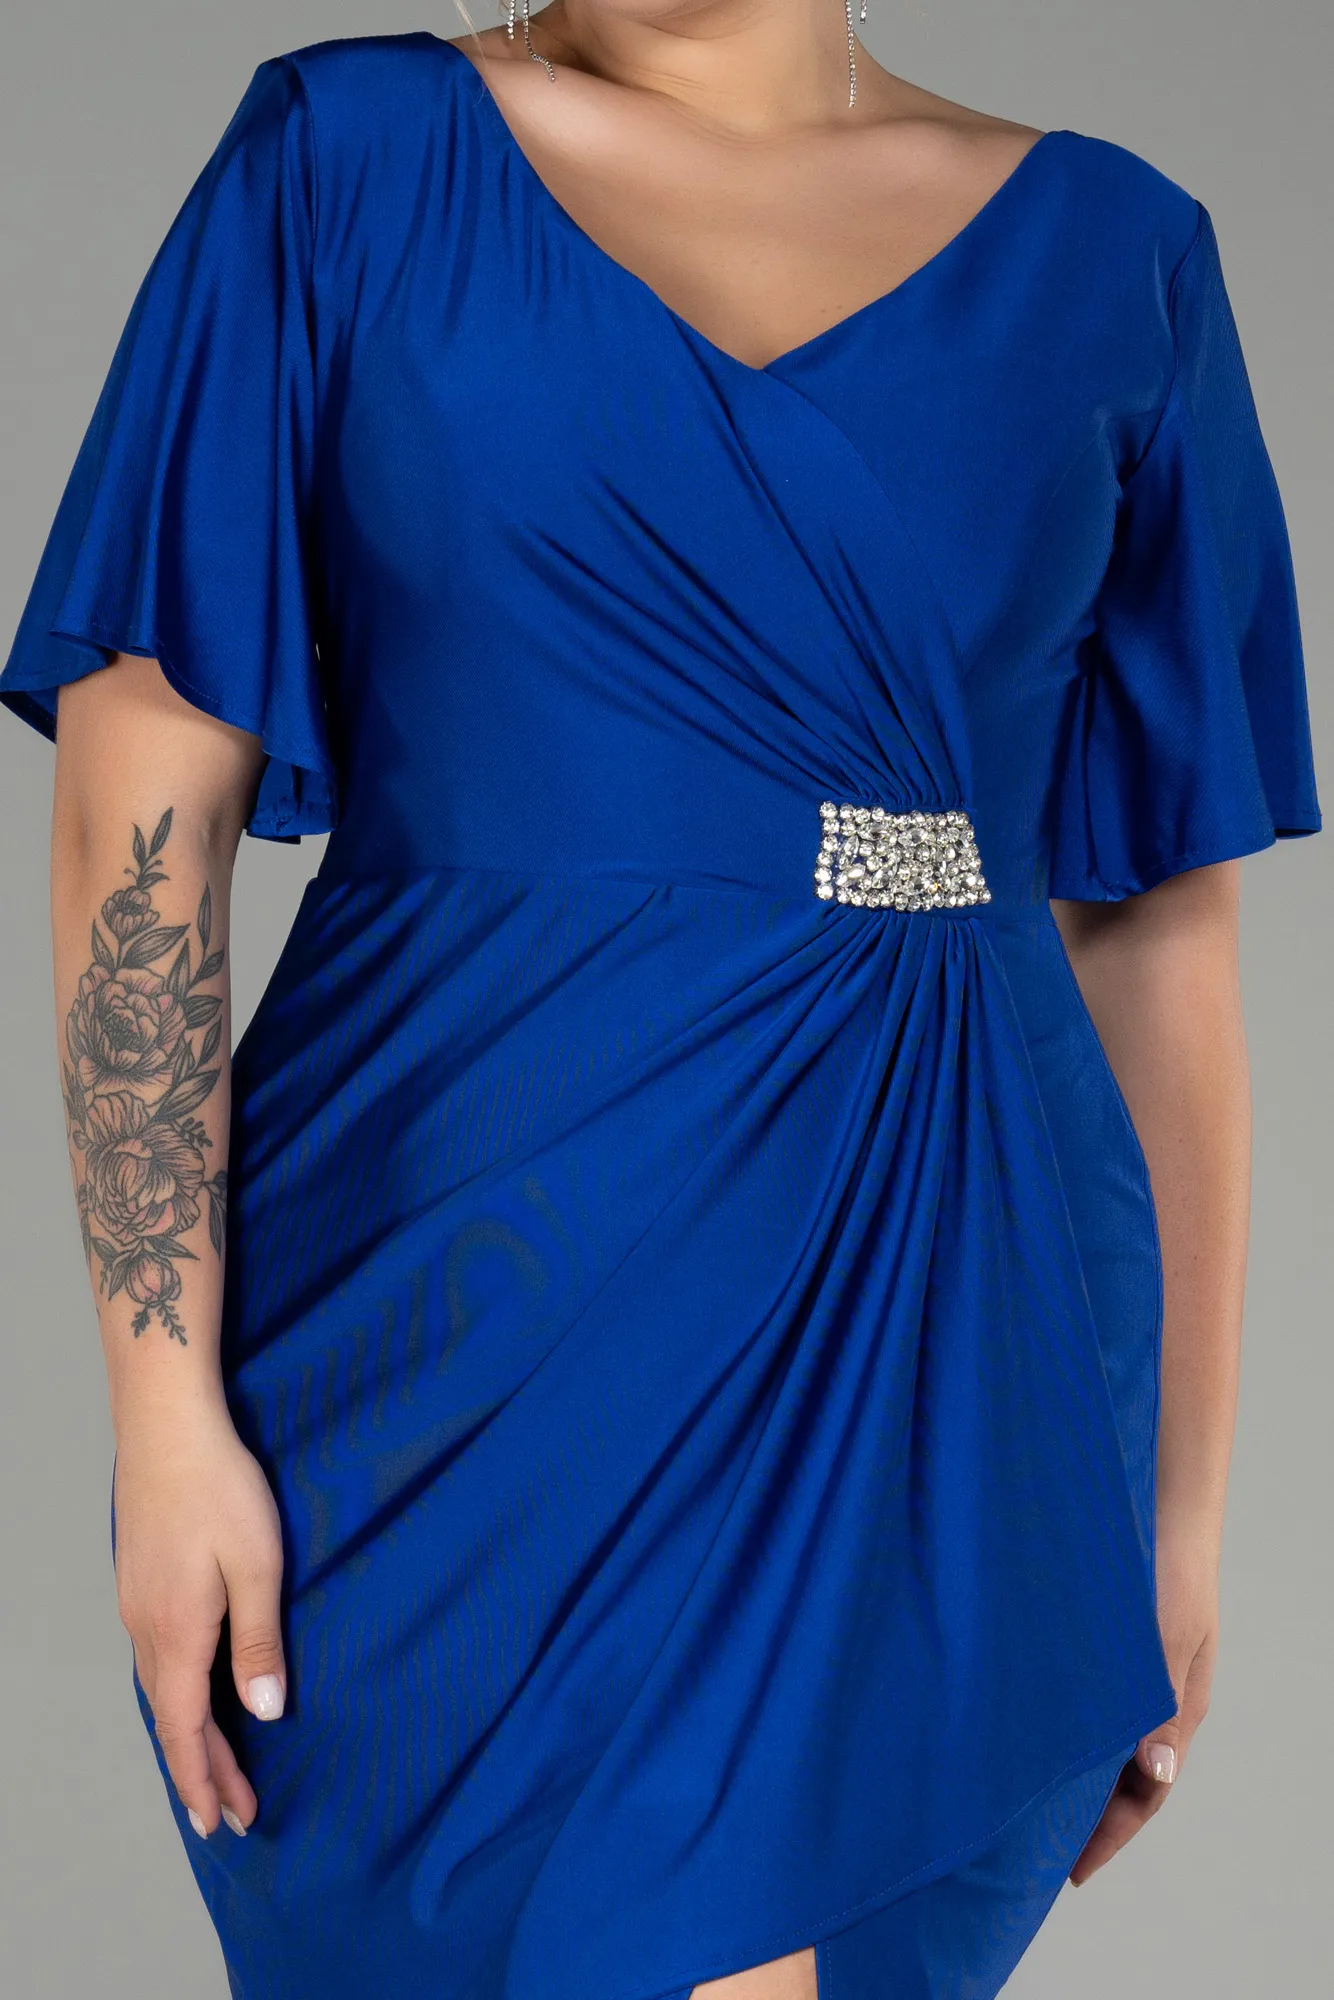 Sax Blue-Short Plus Size Evening Dress ABK1824